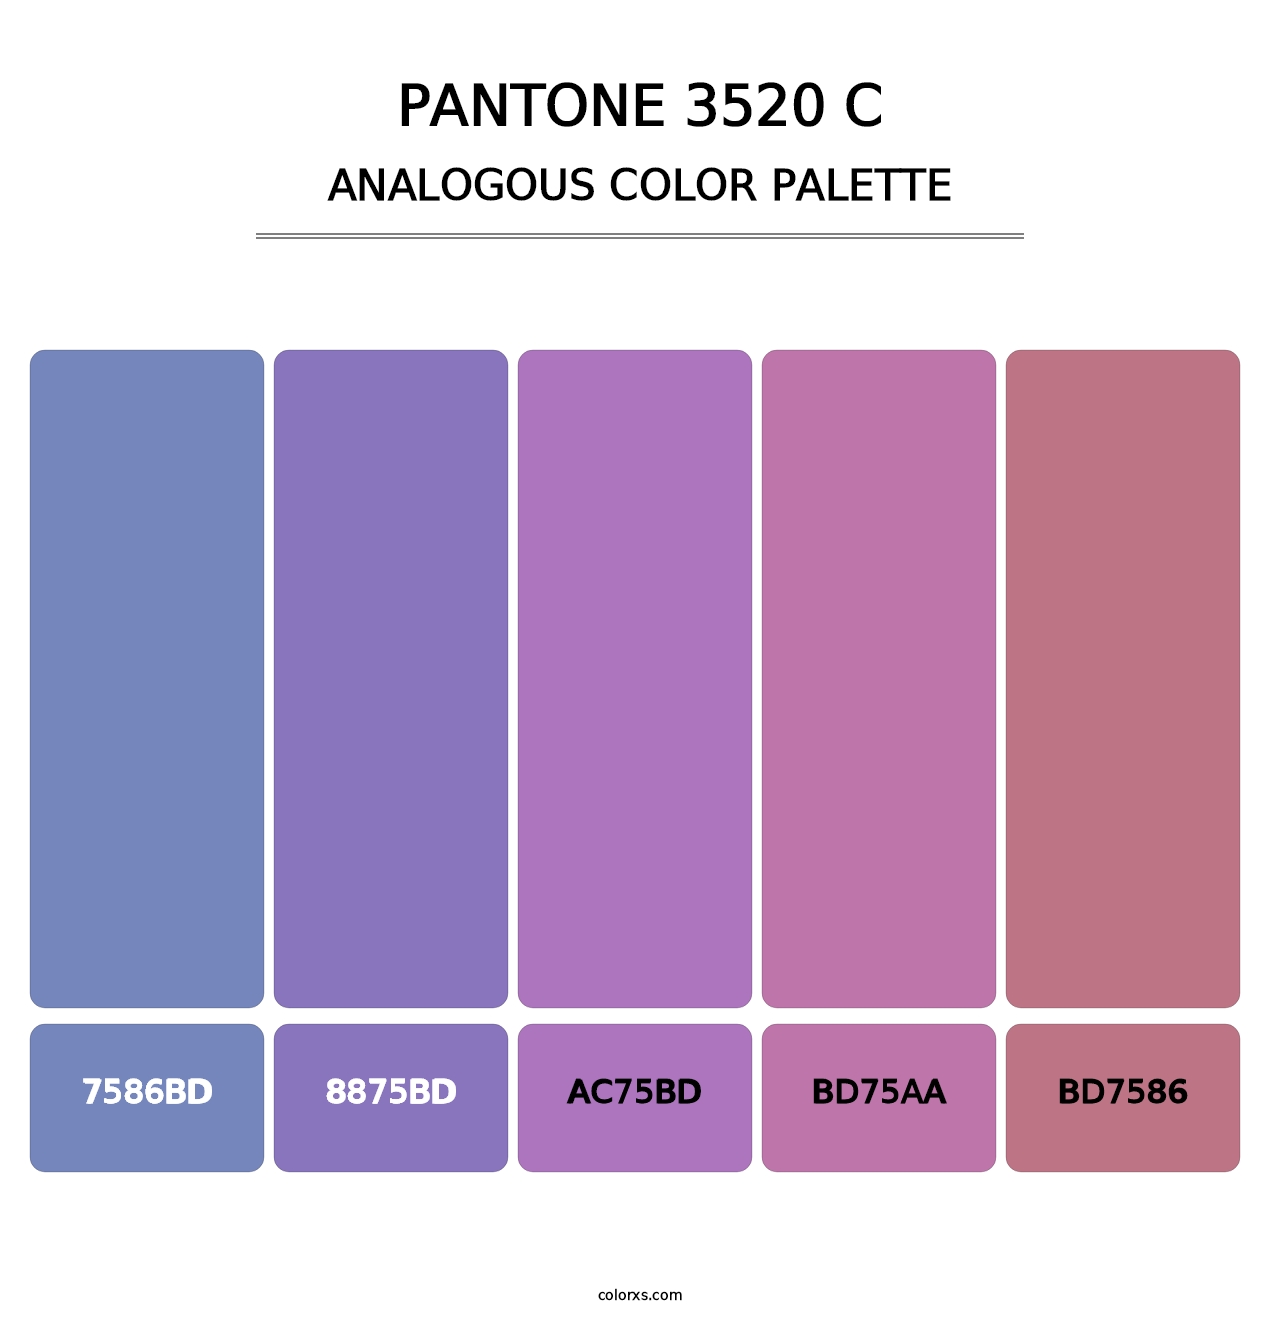 PANTONE 3520 C - Analogous Color Palette